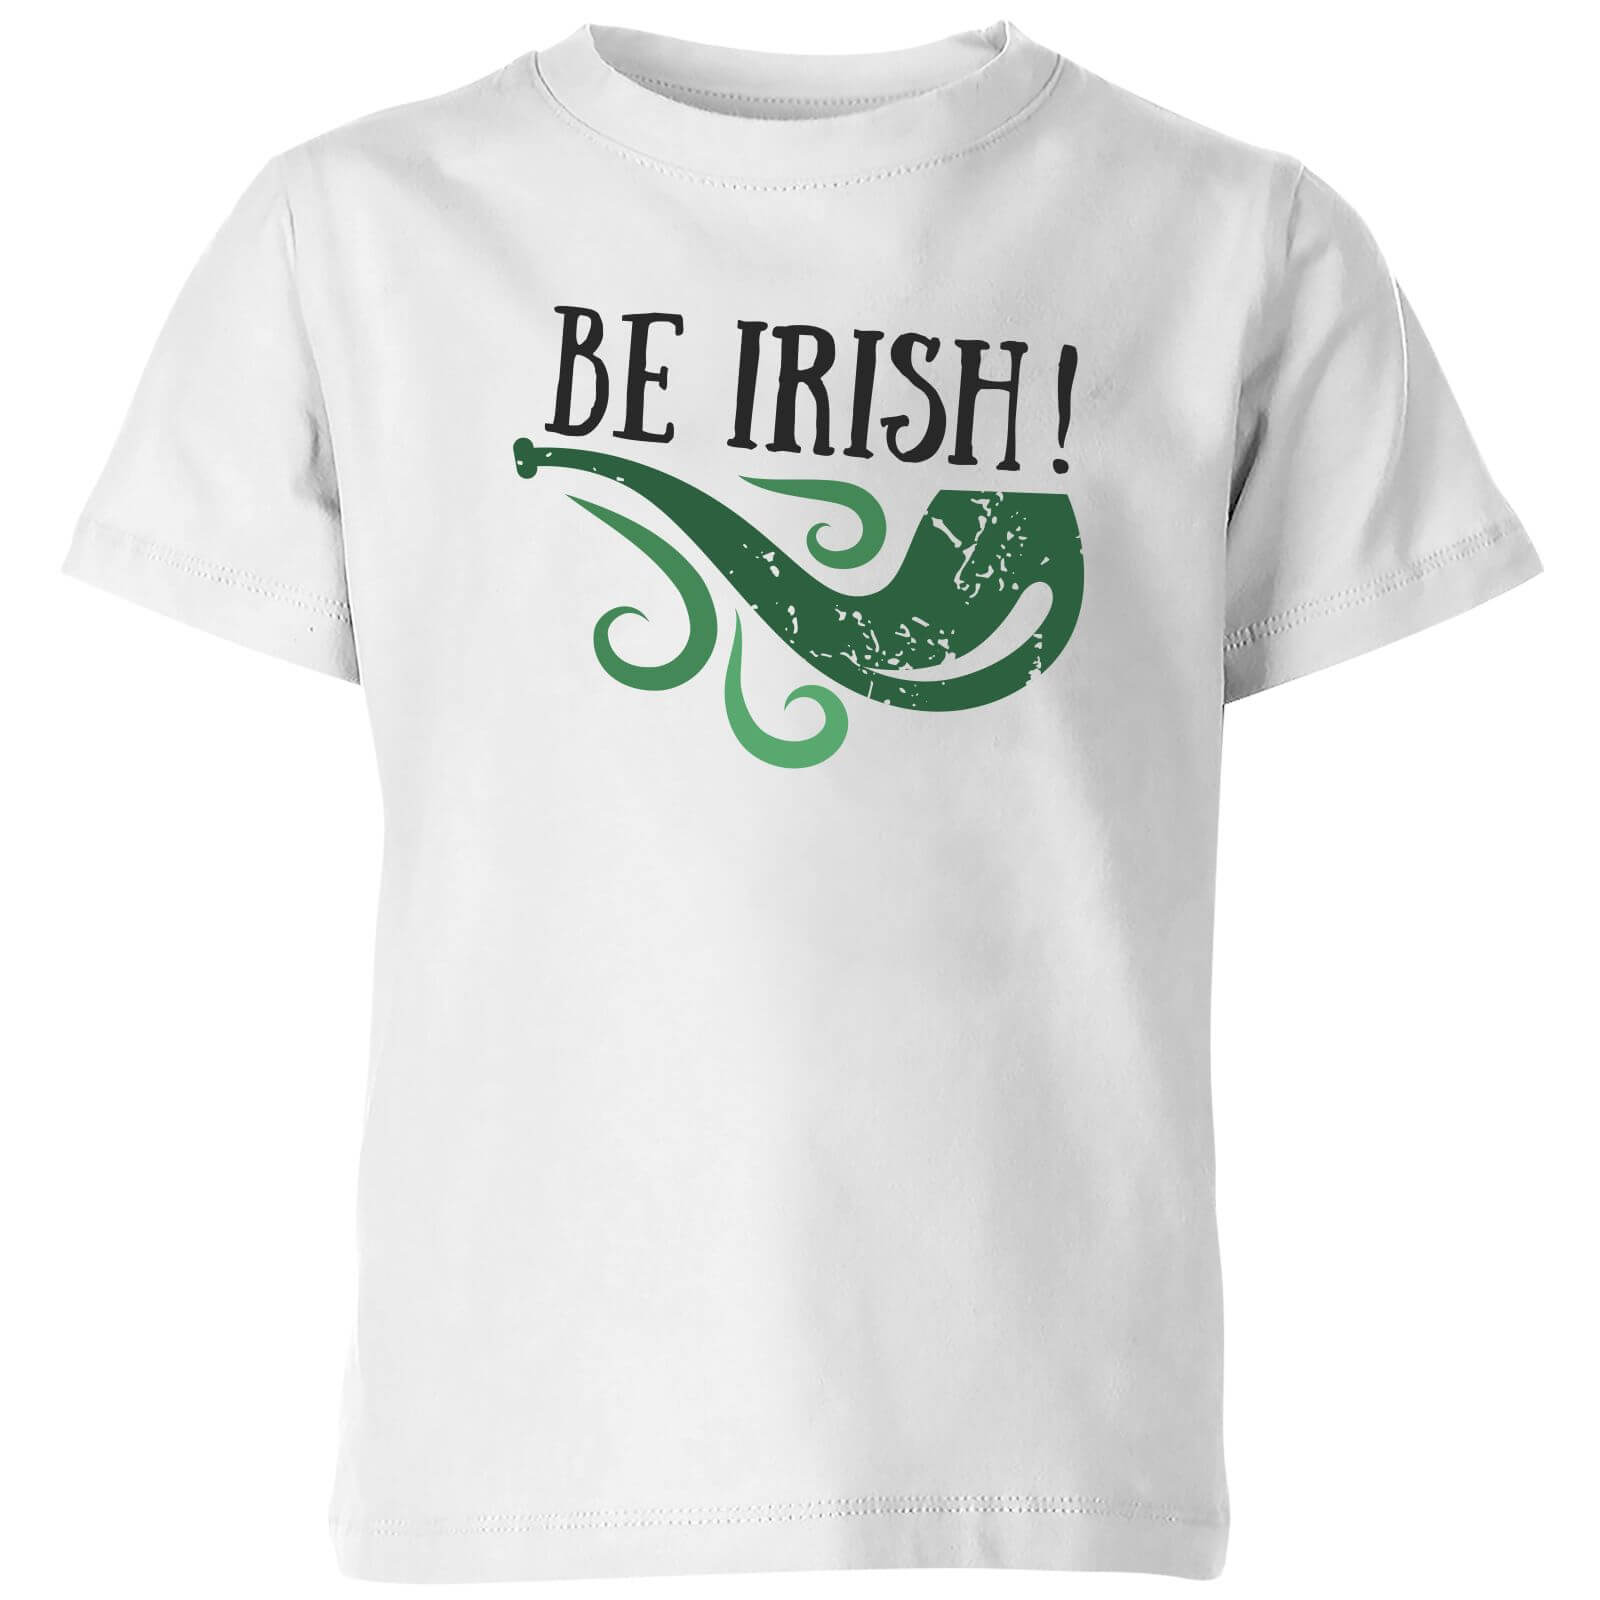 Be Irish Kids' T-Shirt - White - 5-6 Years - White